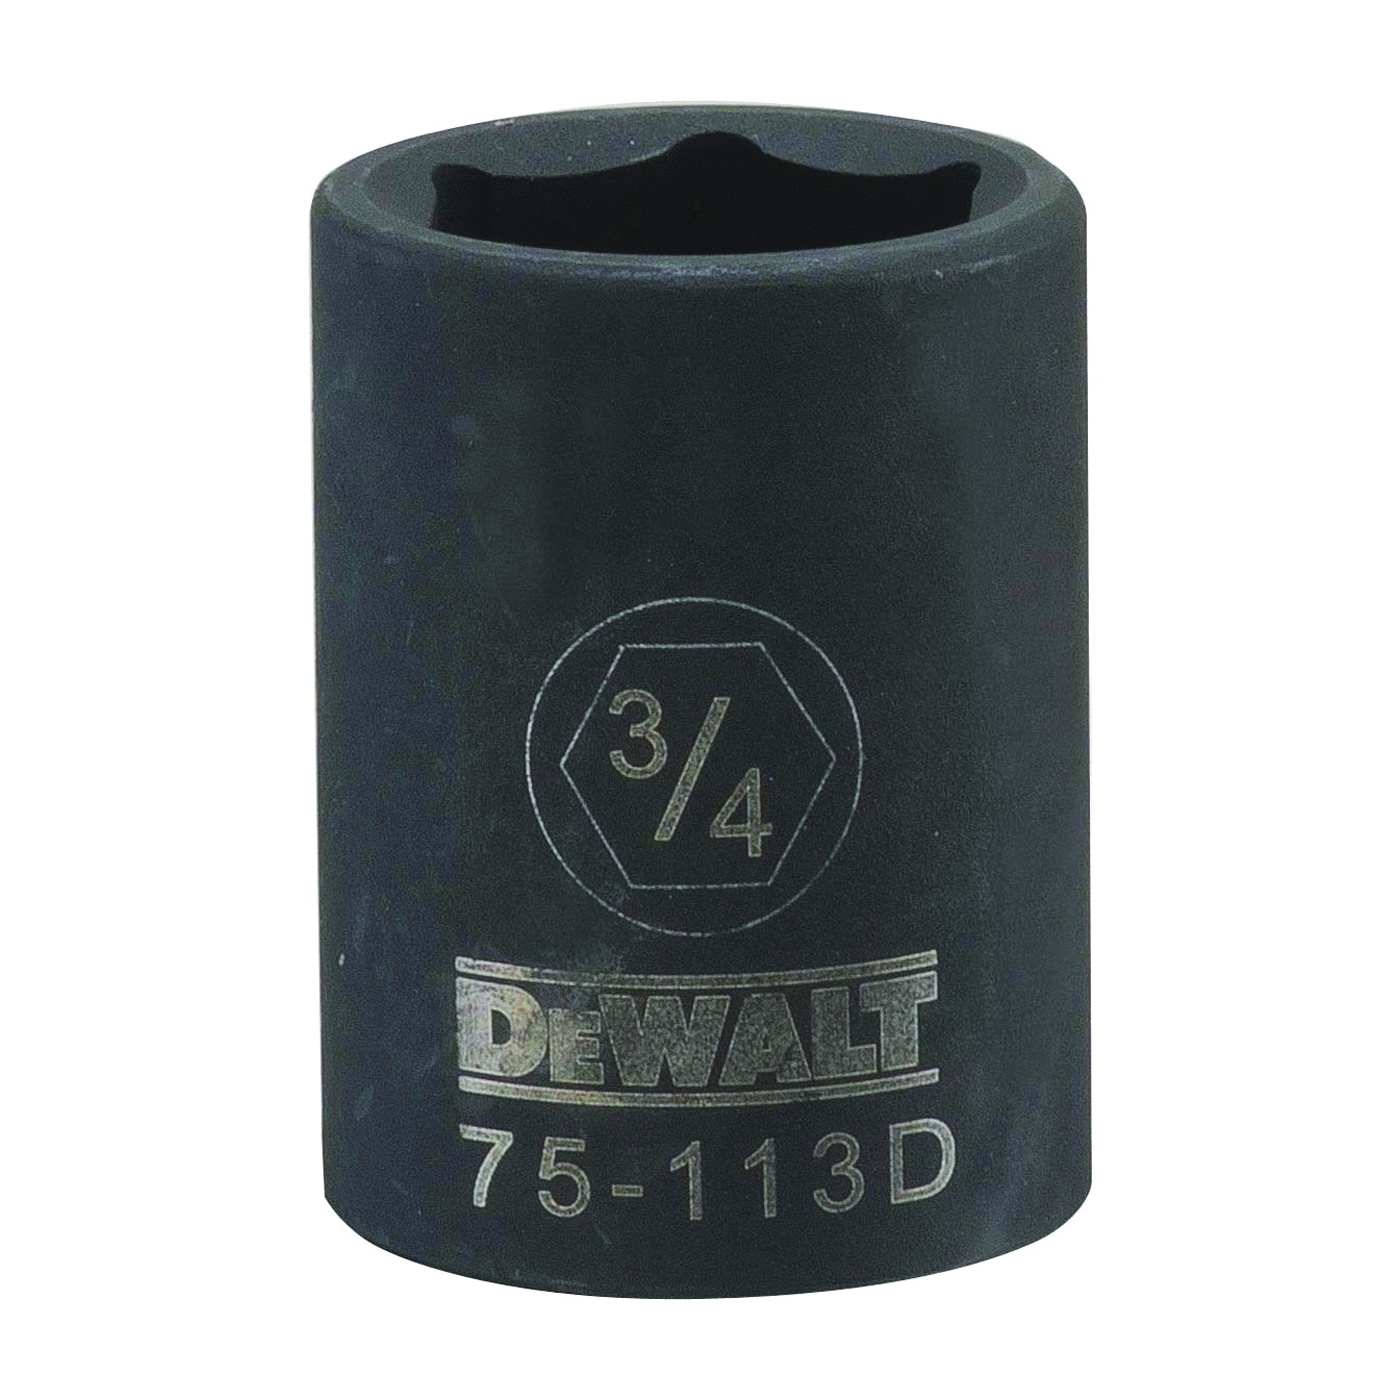 DeWALT DWMT75113OSP Deep Impact Socket, 3/4 in Socket, 1/2 in Drive, 6-Point, Steel, Black Oxide